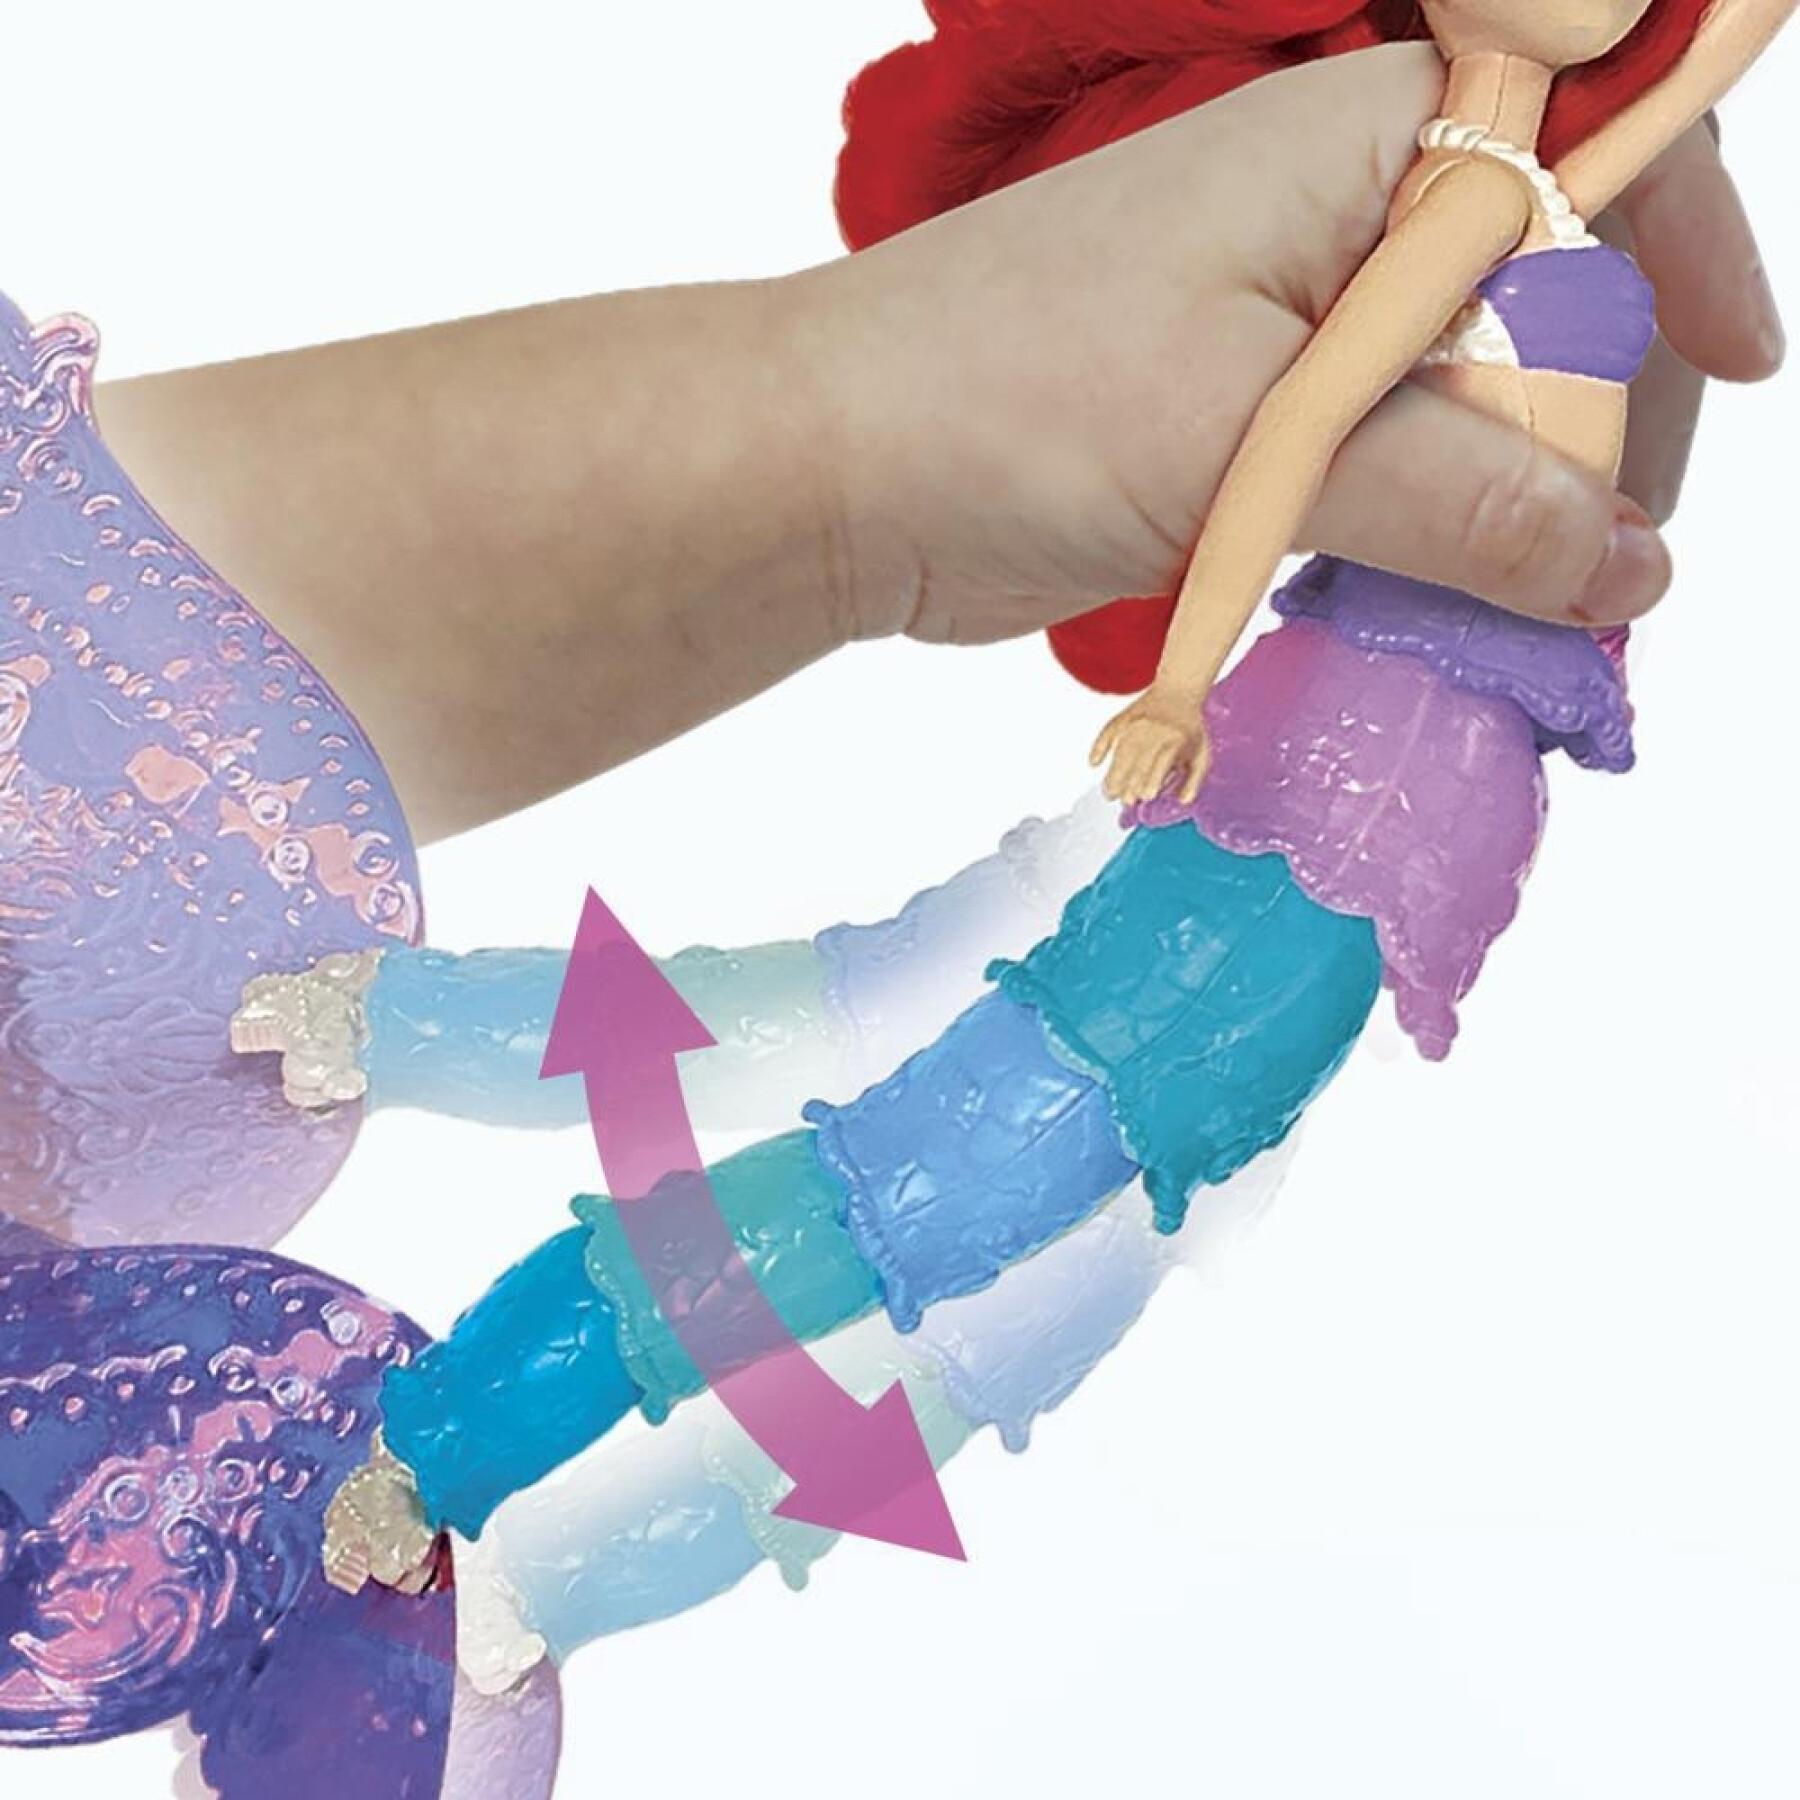 Ariel pop met regenboogstaart Disney Princess